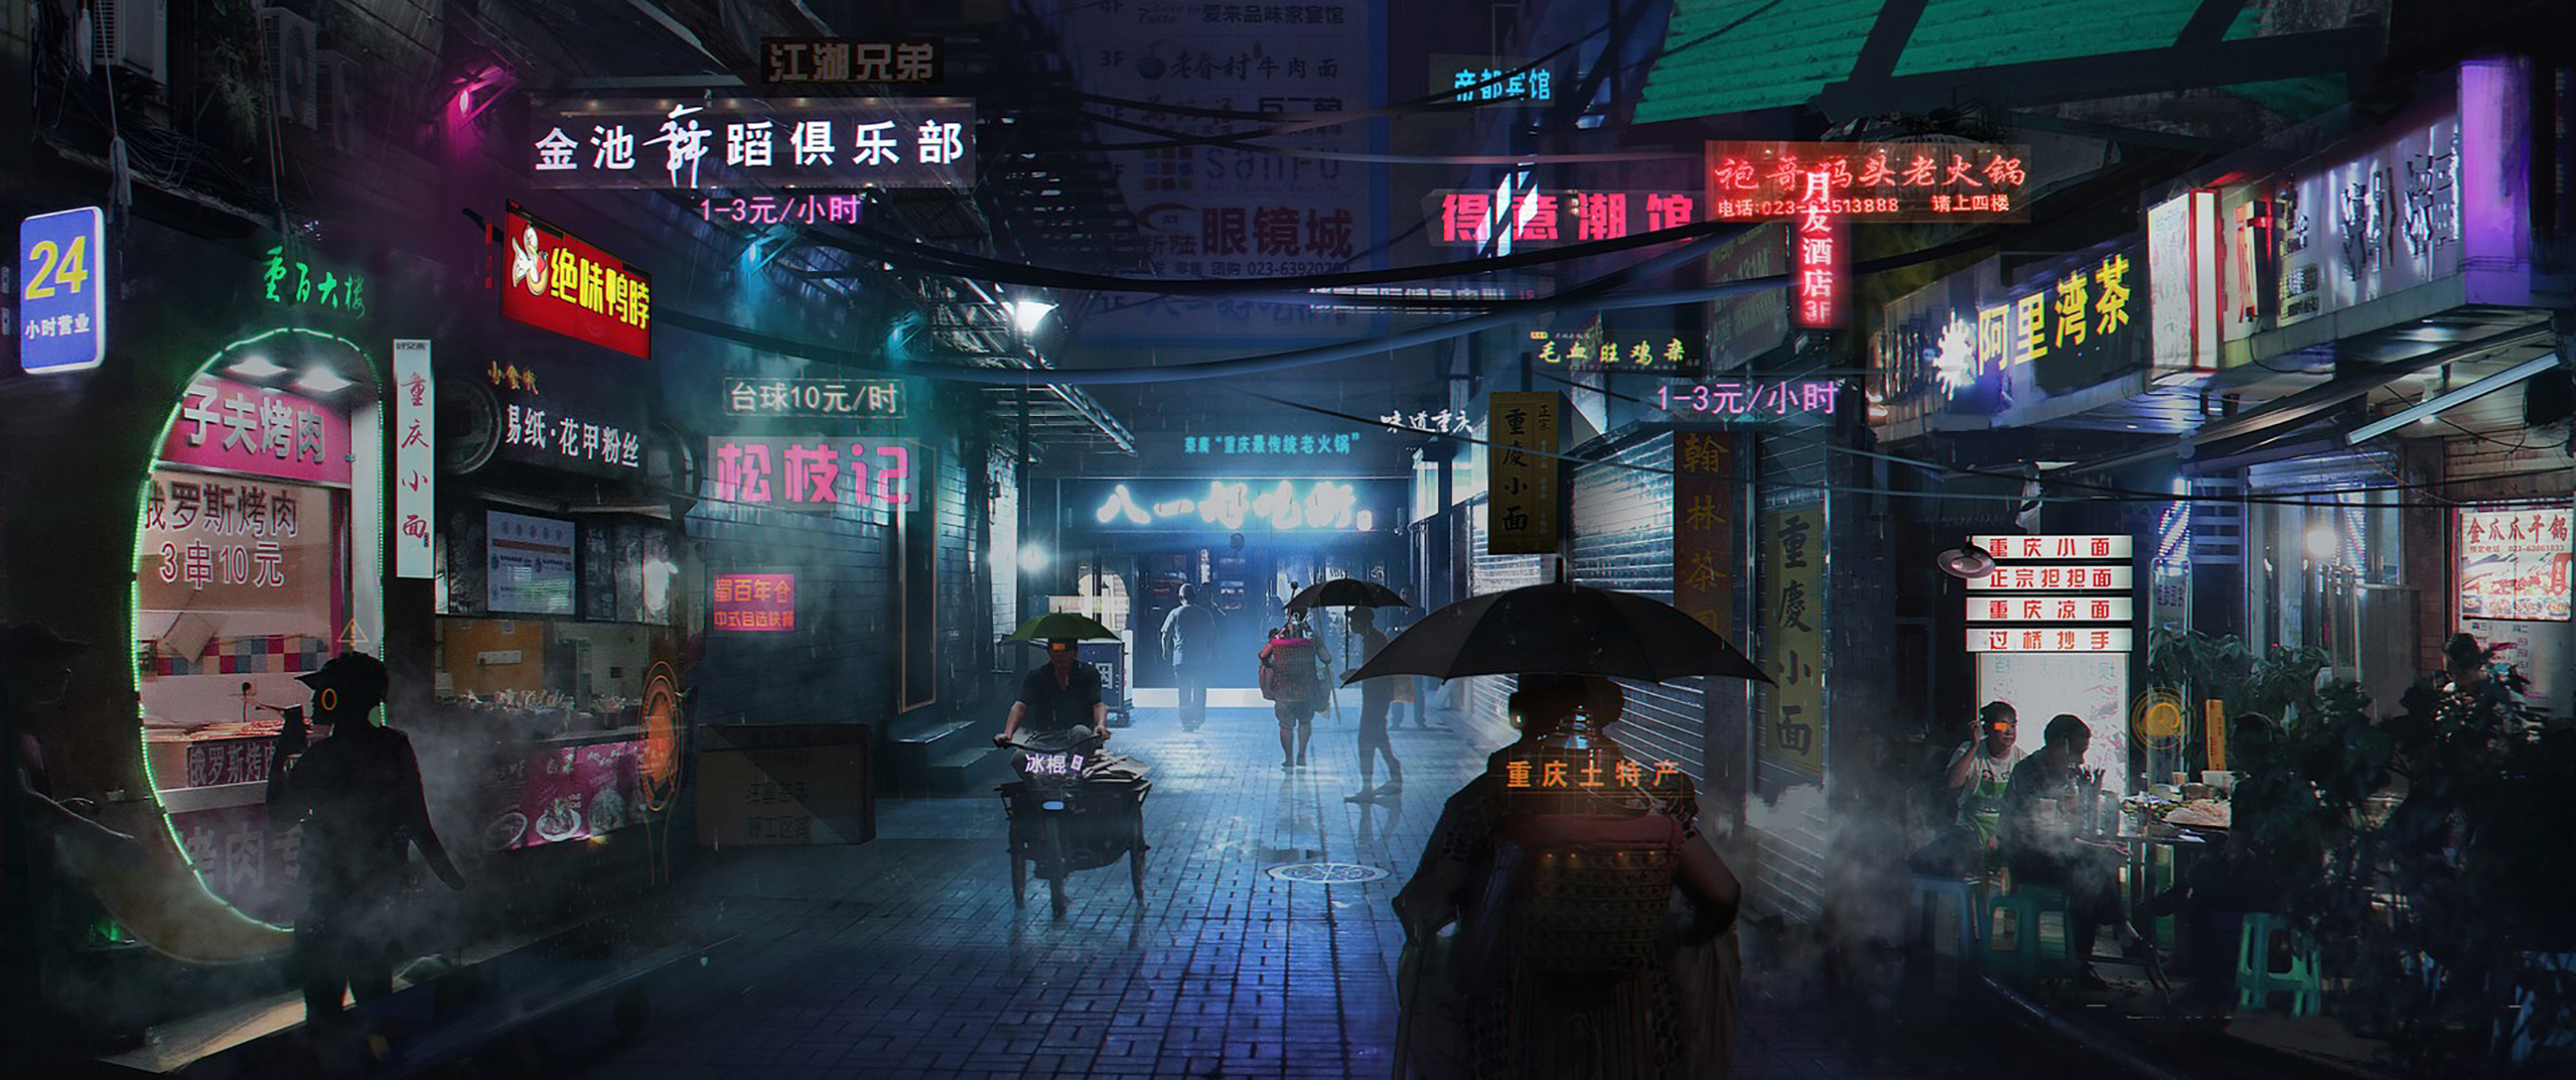 cyberpunk cityscape, sci fi, city, china